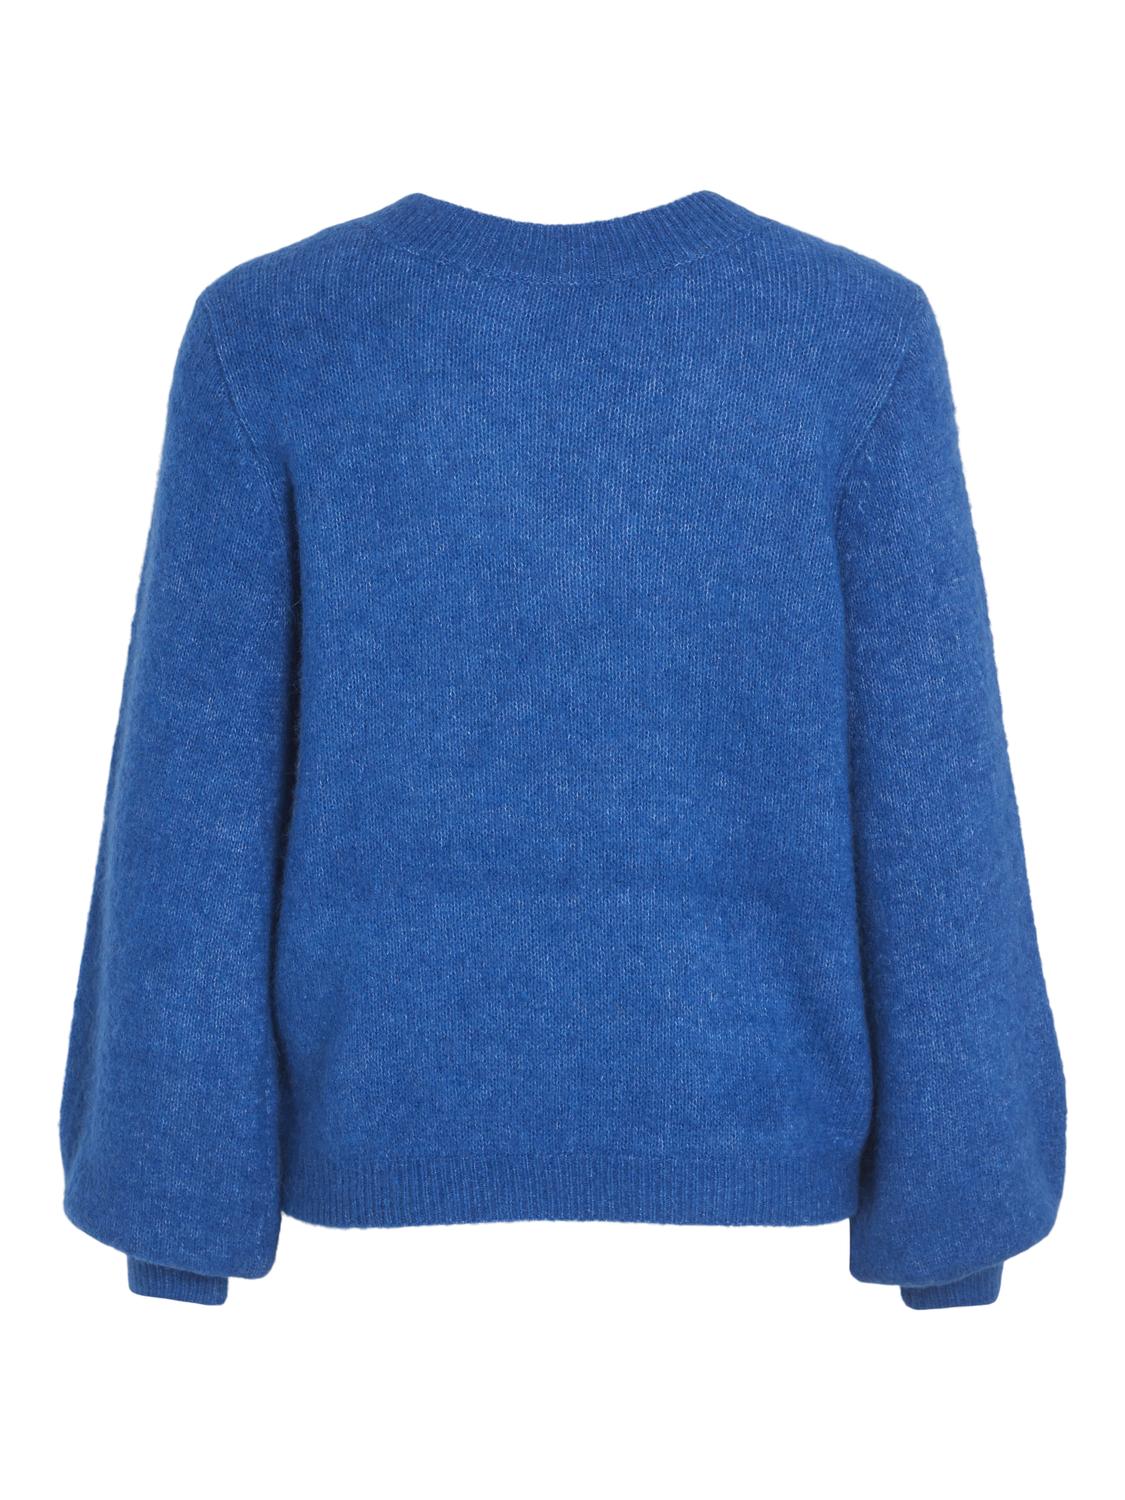 VIJAMINA Pullover - Lapis Blue